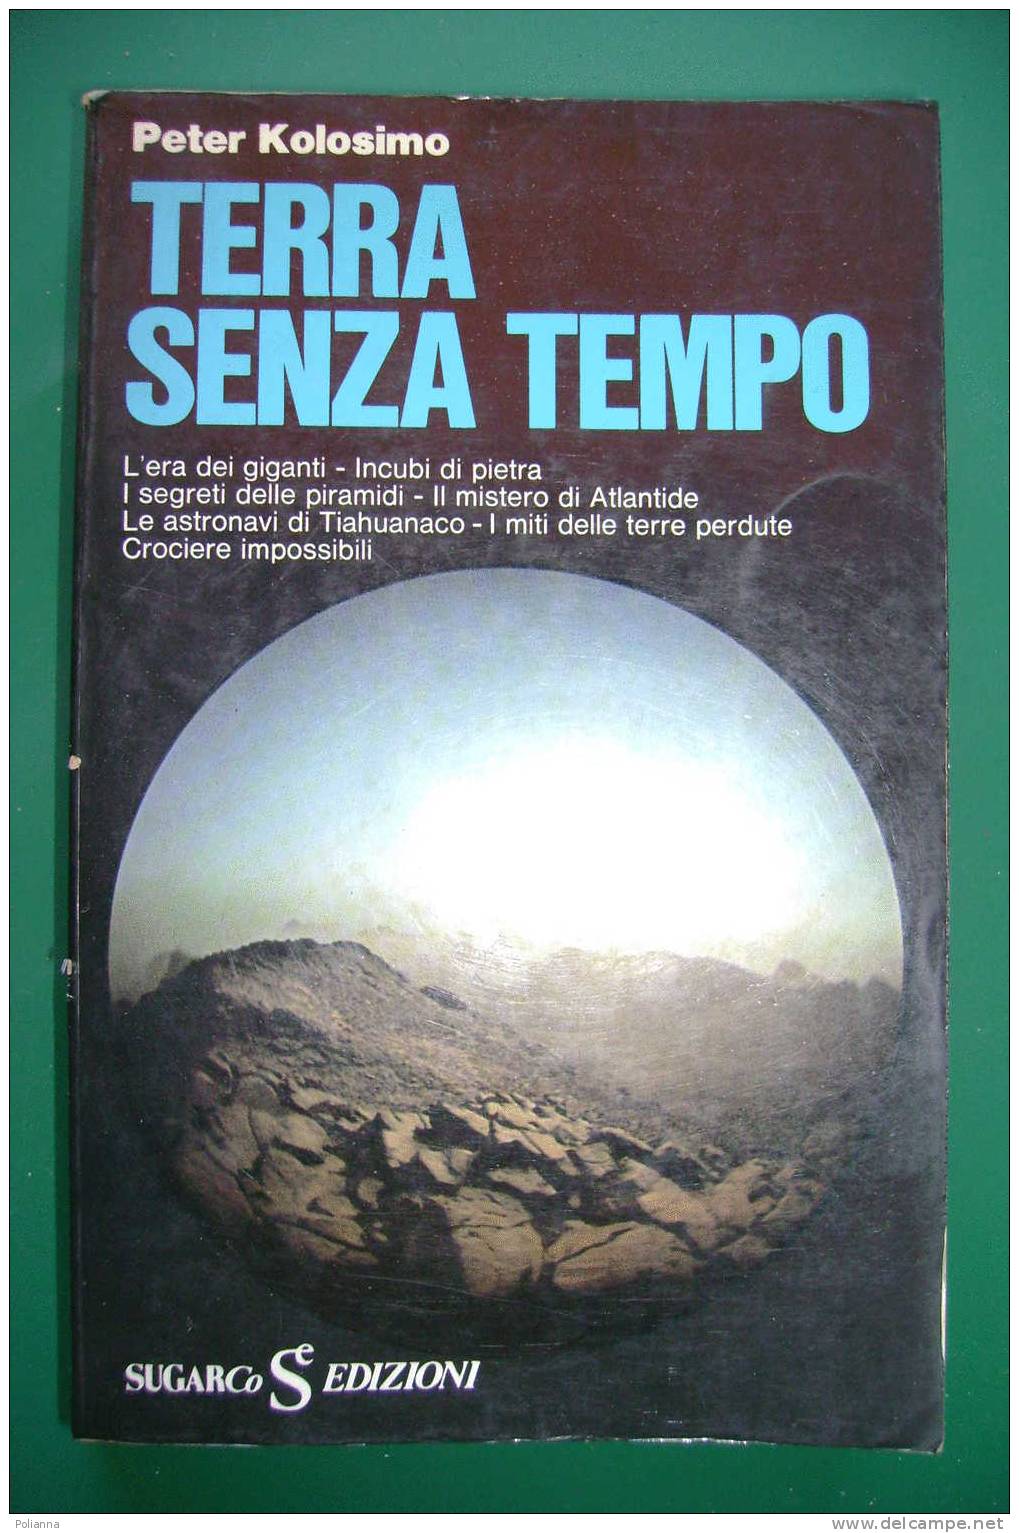 PDG/34  Peter Kolosimo TERRA SENZA TEMPO Sugar Edizioni 1975 - Fantascienza E Fantasia